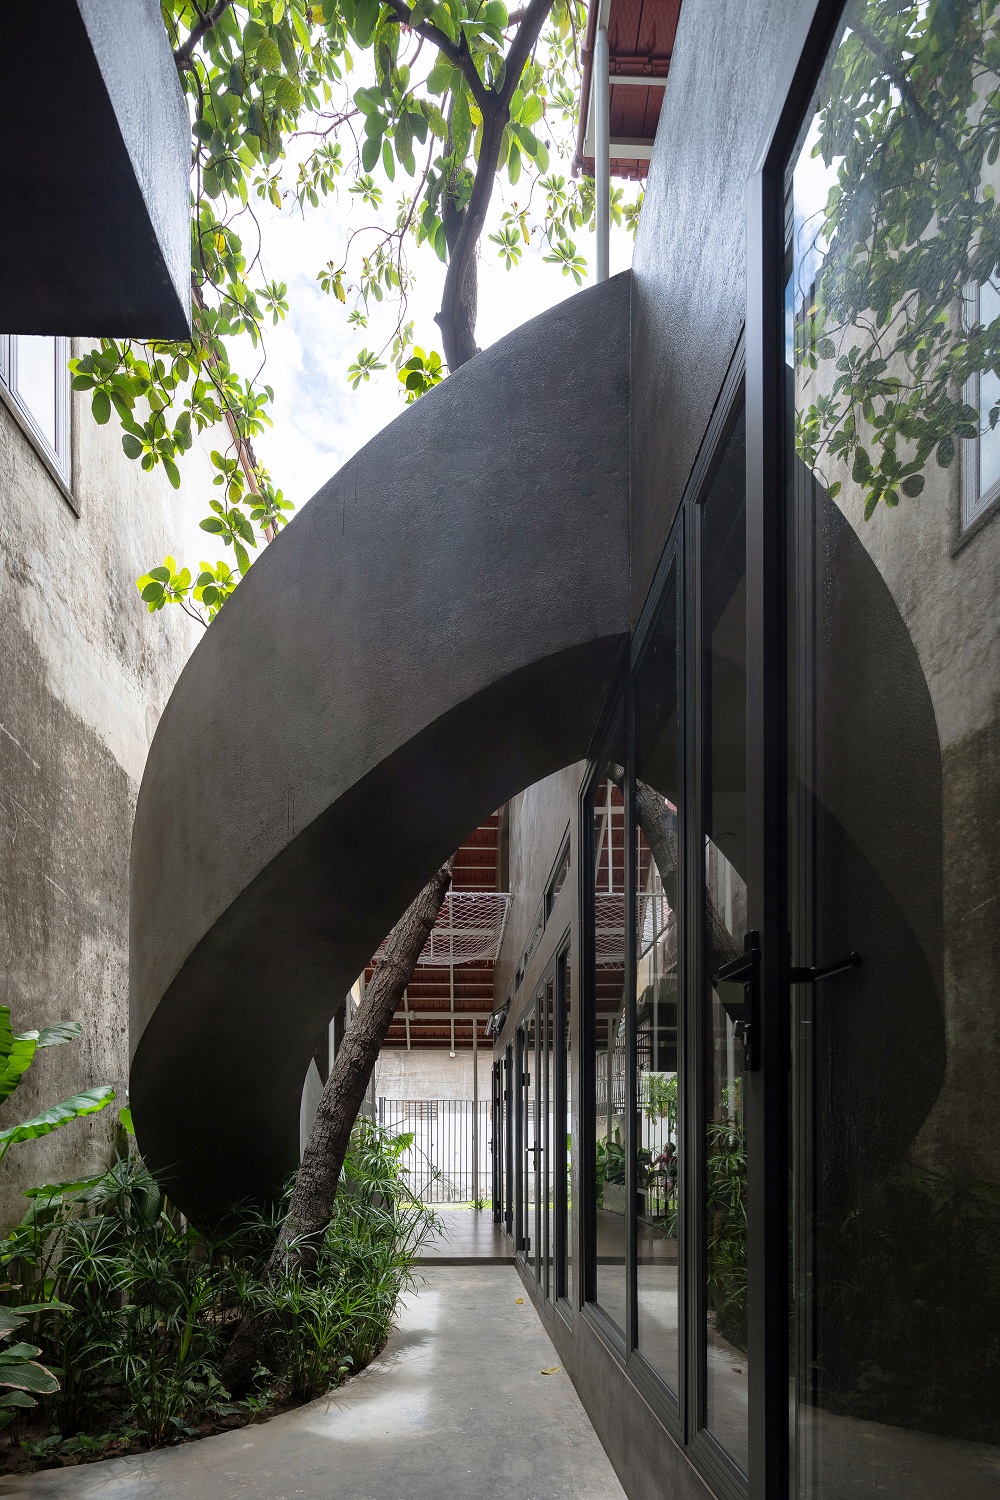 Cầu thang xoắn ốc ôm lấy cây bơ tạo điểm nhấn ấn tượng cho không gian nhà.